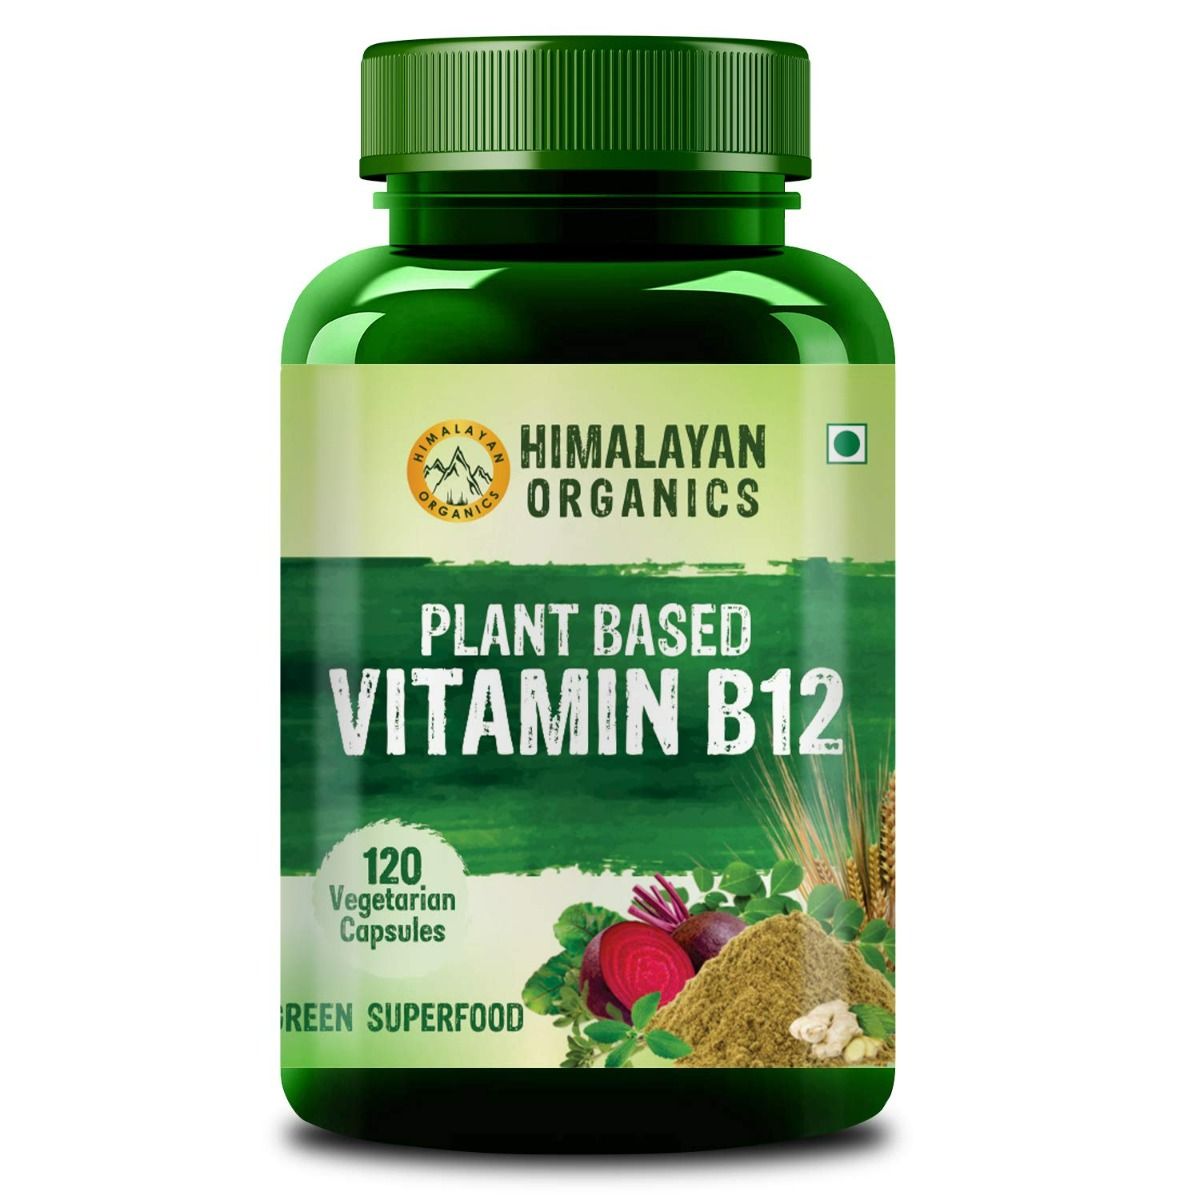 Himalayan Organics Plant Based Vitamin B12, 120 Capsules, Pack of 1 